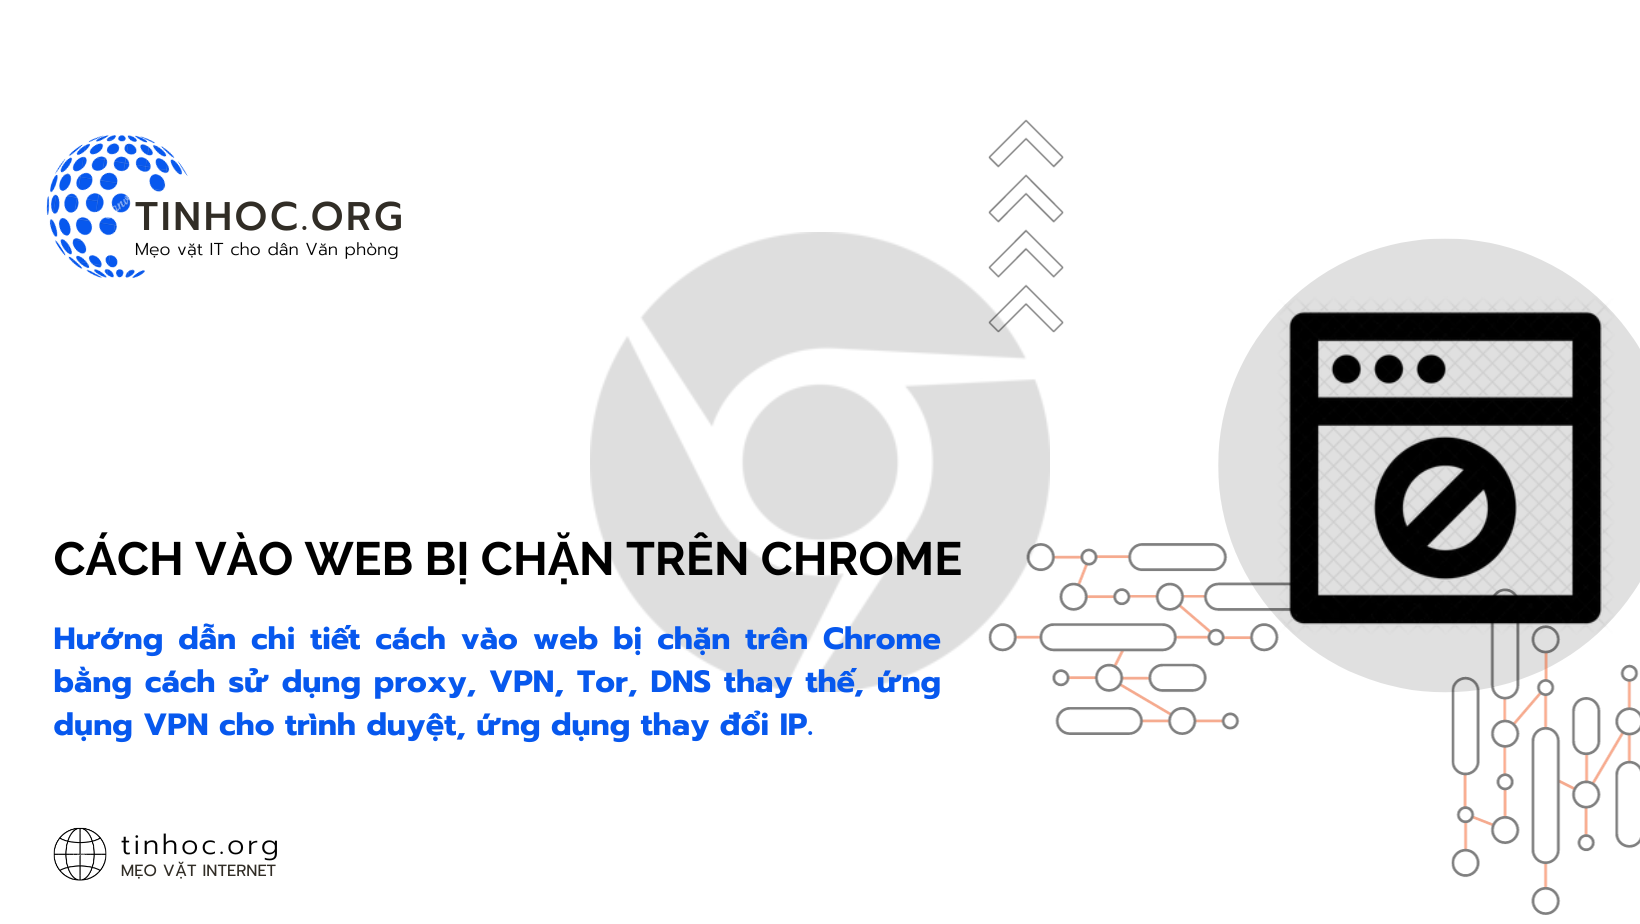 Hướng dẫn chi tiết cách vào web bị chặn trên Chrome bằng cách sử dụng proxy, VPN, Tor, DNS thay thế, ứng dụng VPN cho trình duyệt, ứng dụng thay đổi IP.